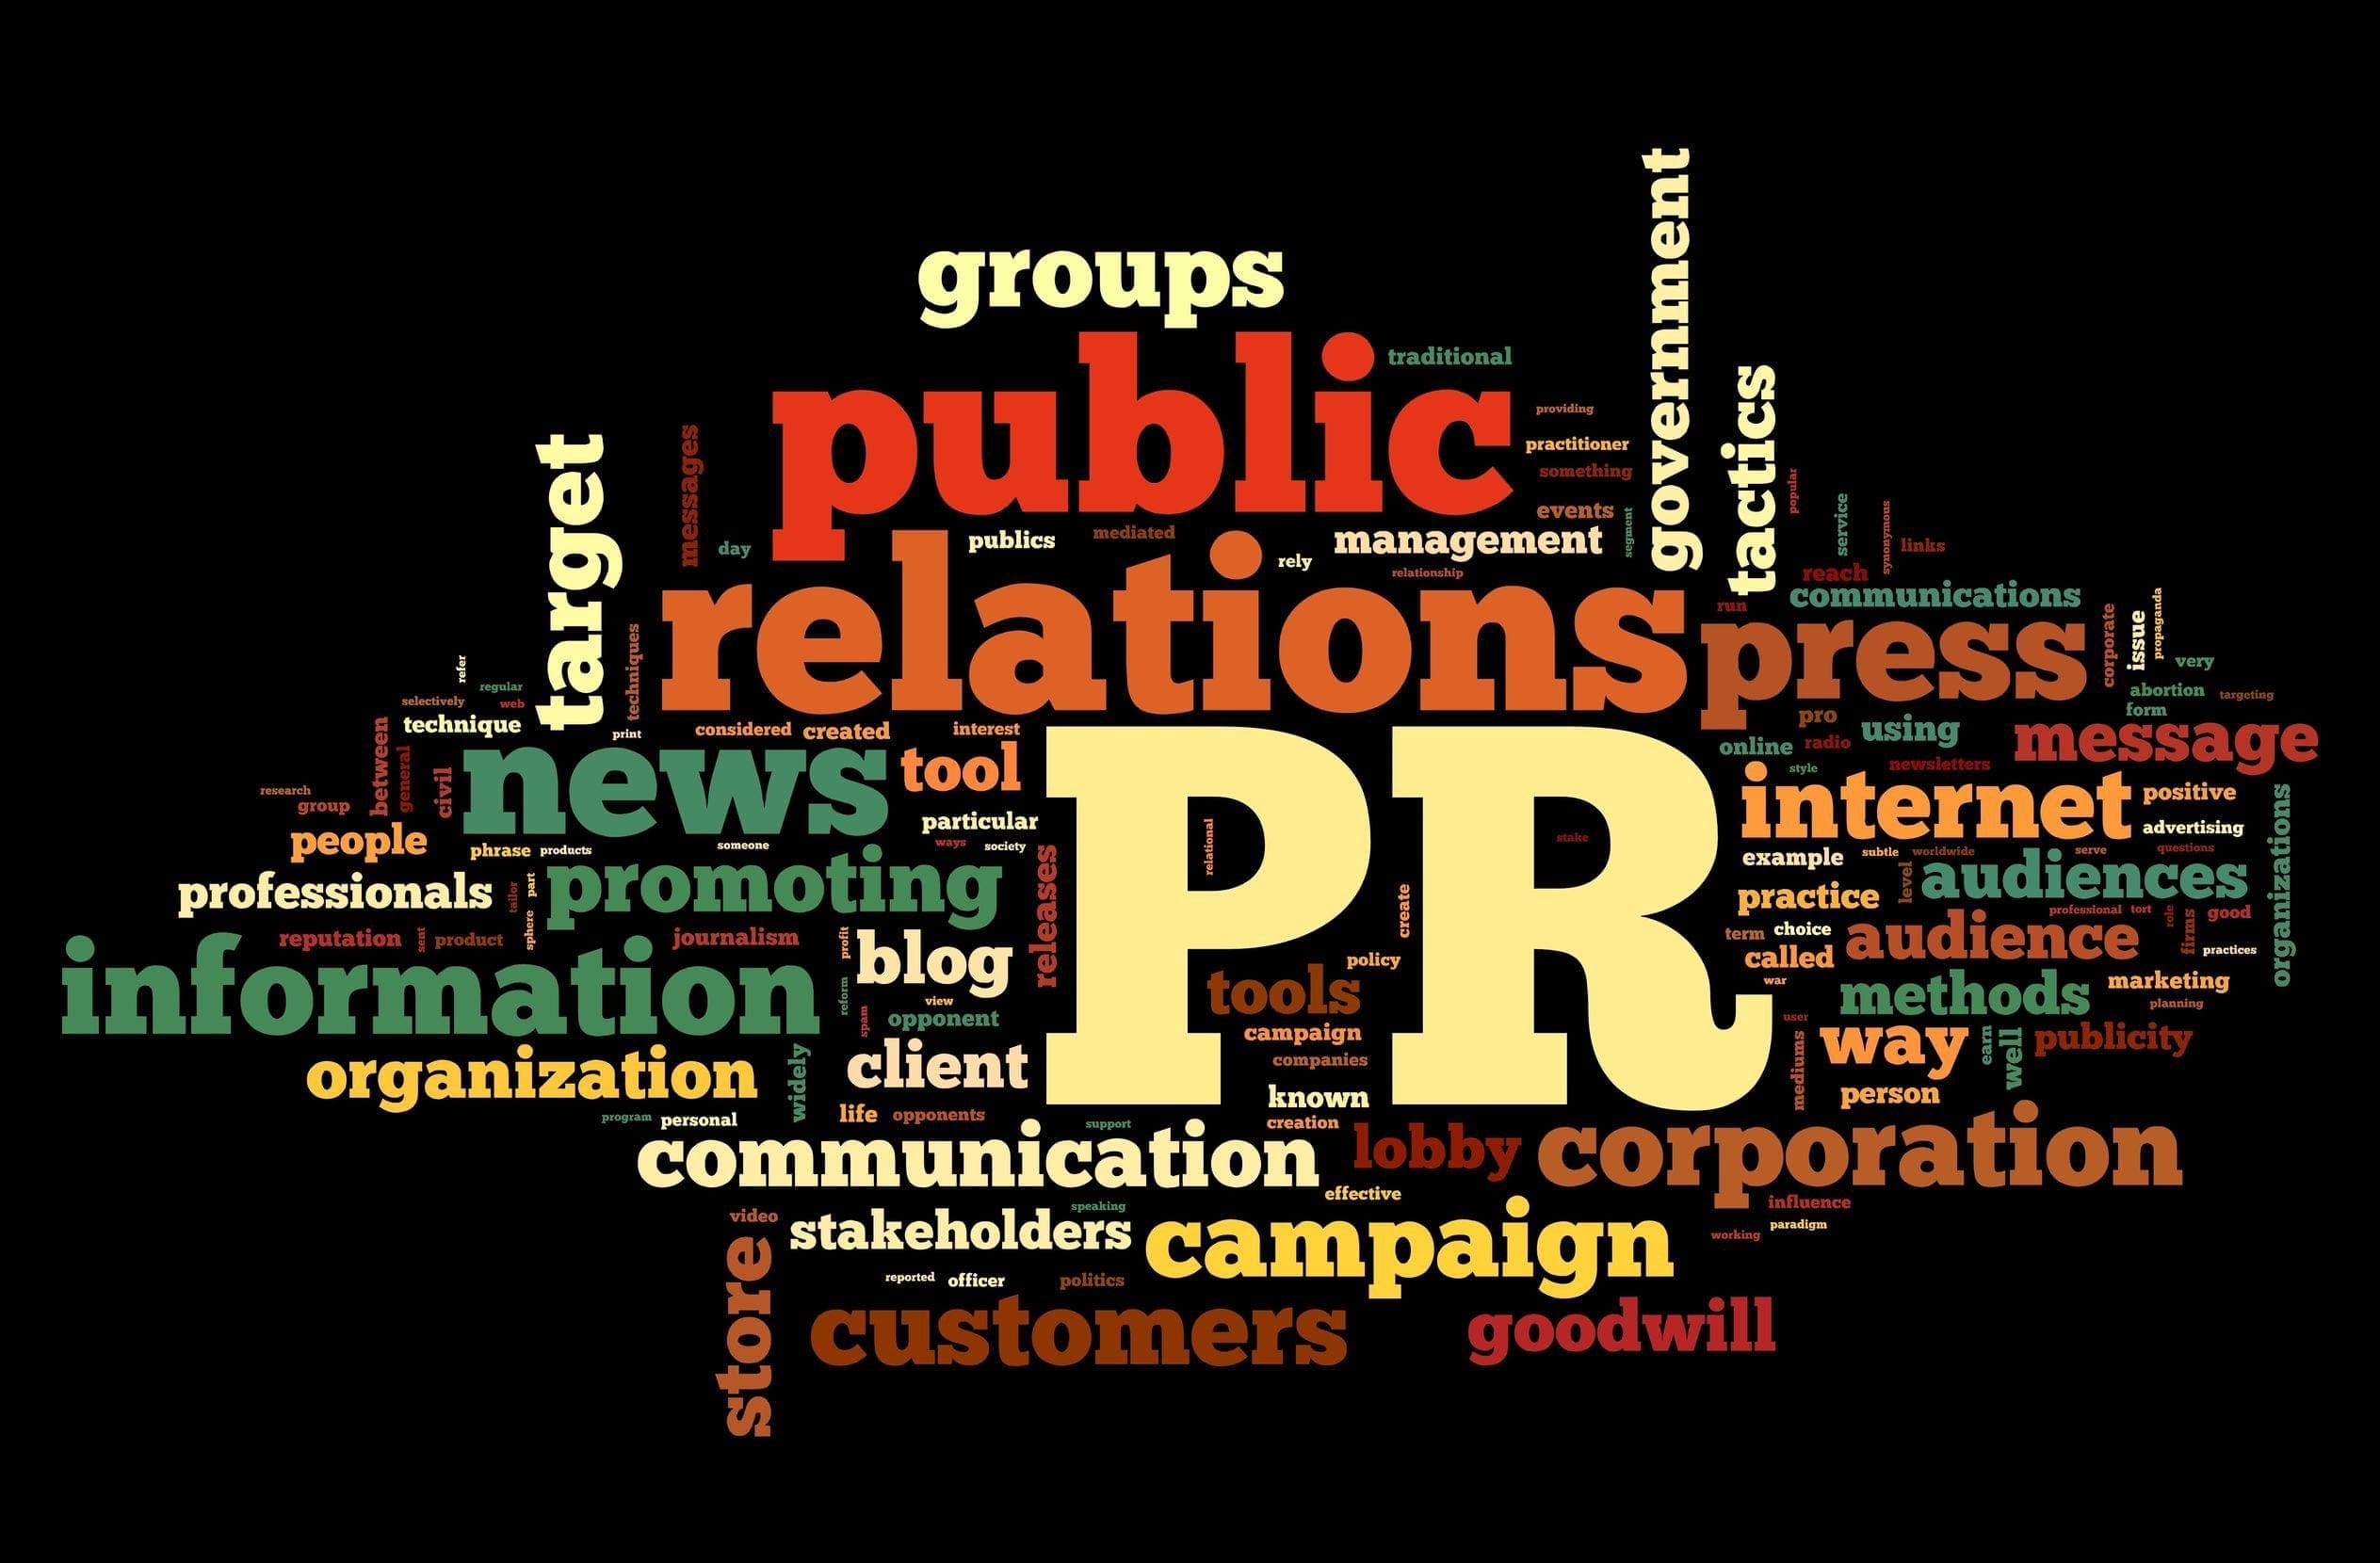 PR agencies